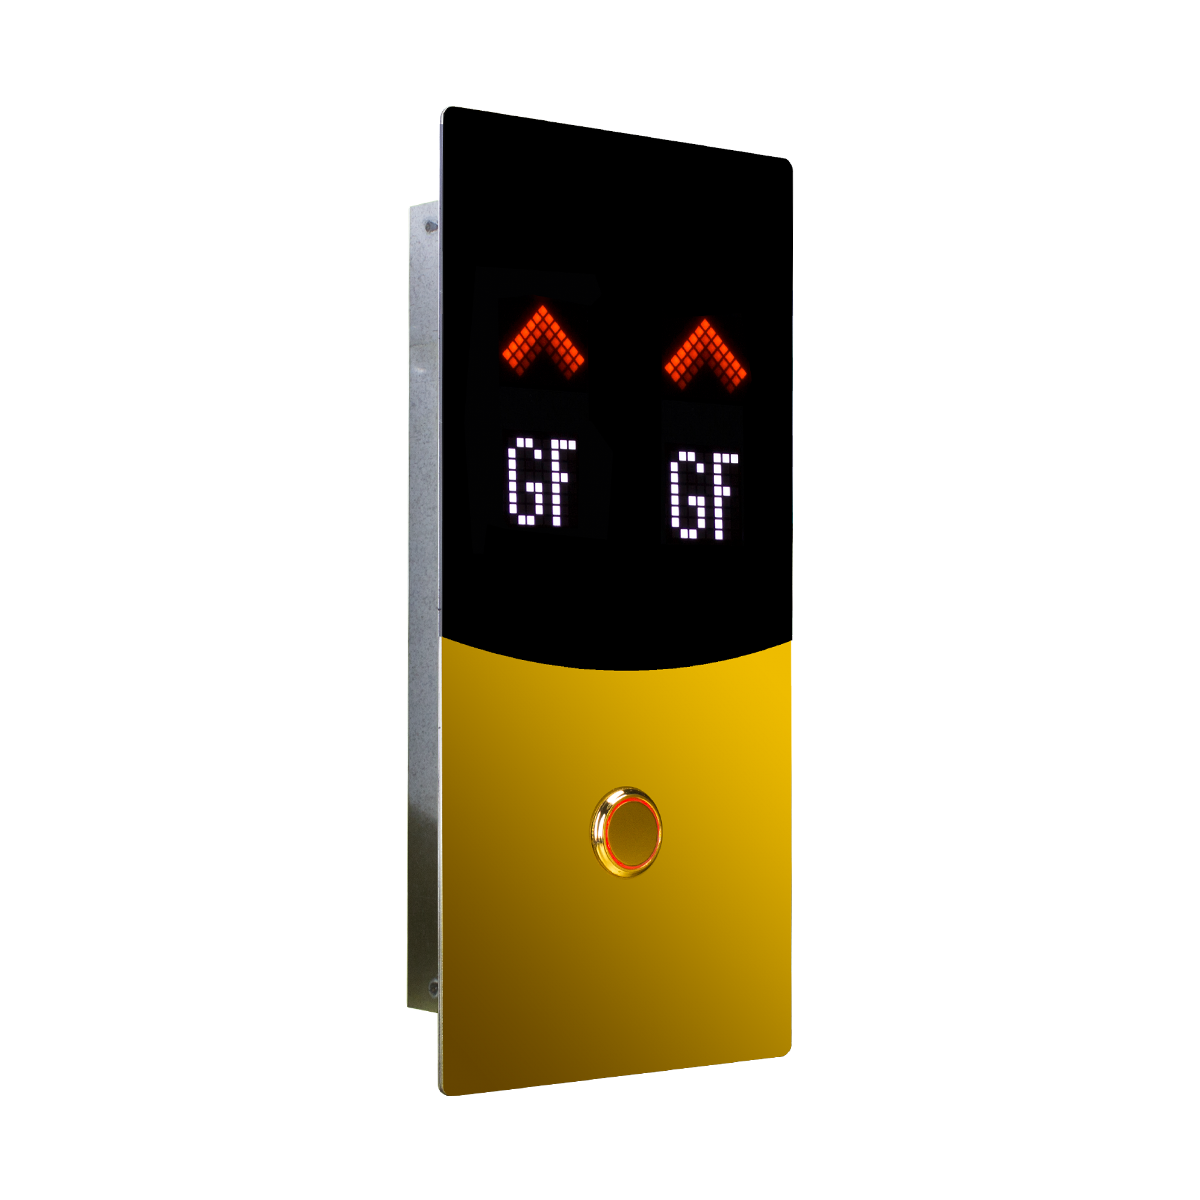 نل شستی دو متری روکار داخل کابین آسانسور با محدود کننده اثر انگشتی و نمایشگر تاچ 7 اینچی رنگی و نشانگر 9 اینچ رنگی - سری CATRINA TFT TOUCH - شرکت نوین کیا تک